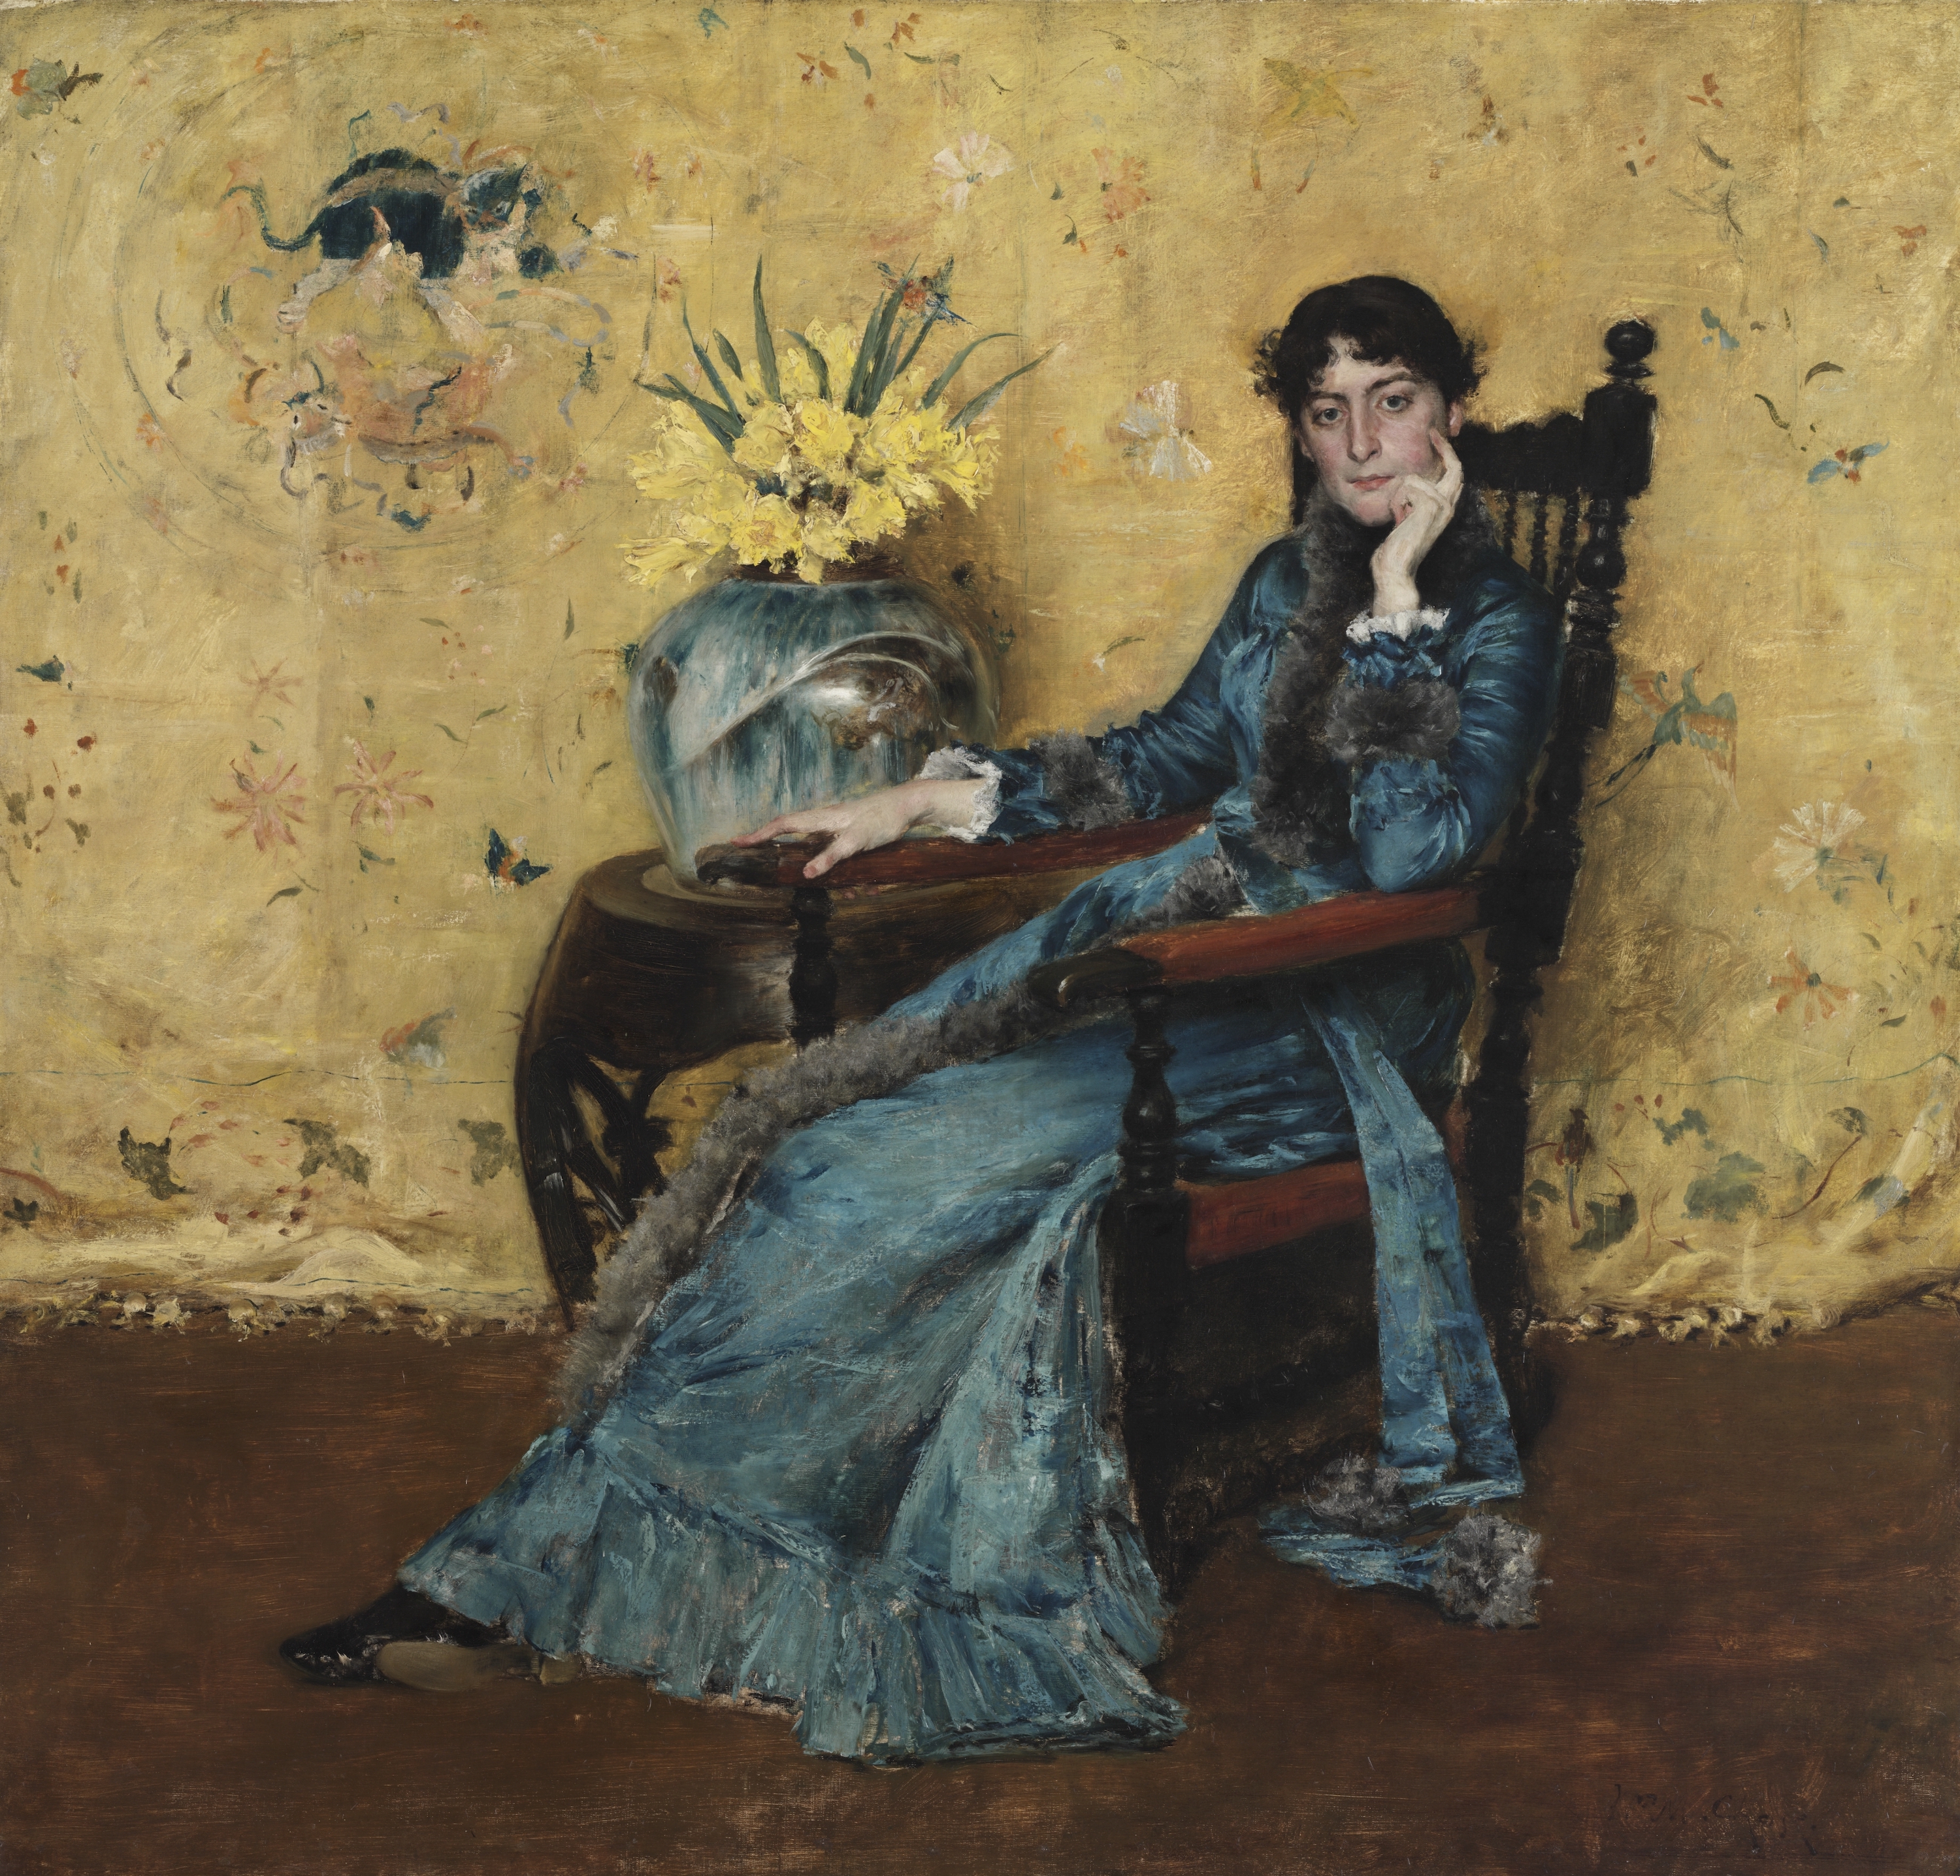 多拉惠勒的肖像 by William Merritt Chase  - 1882-83 - 180.6 x 188.6厘米 